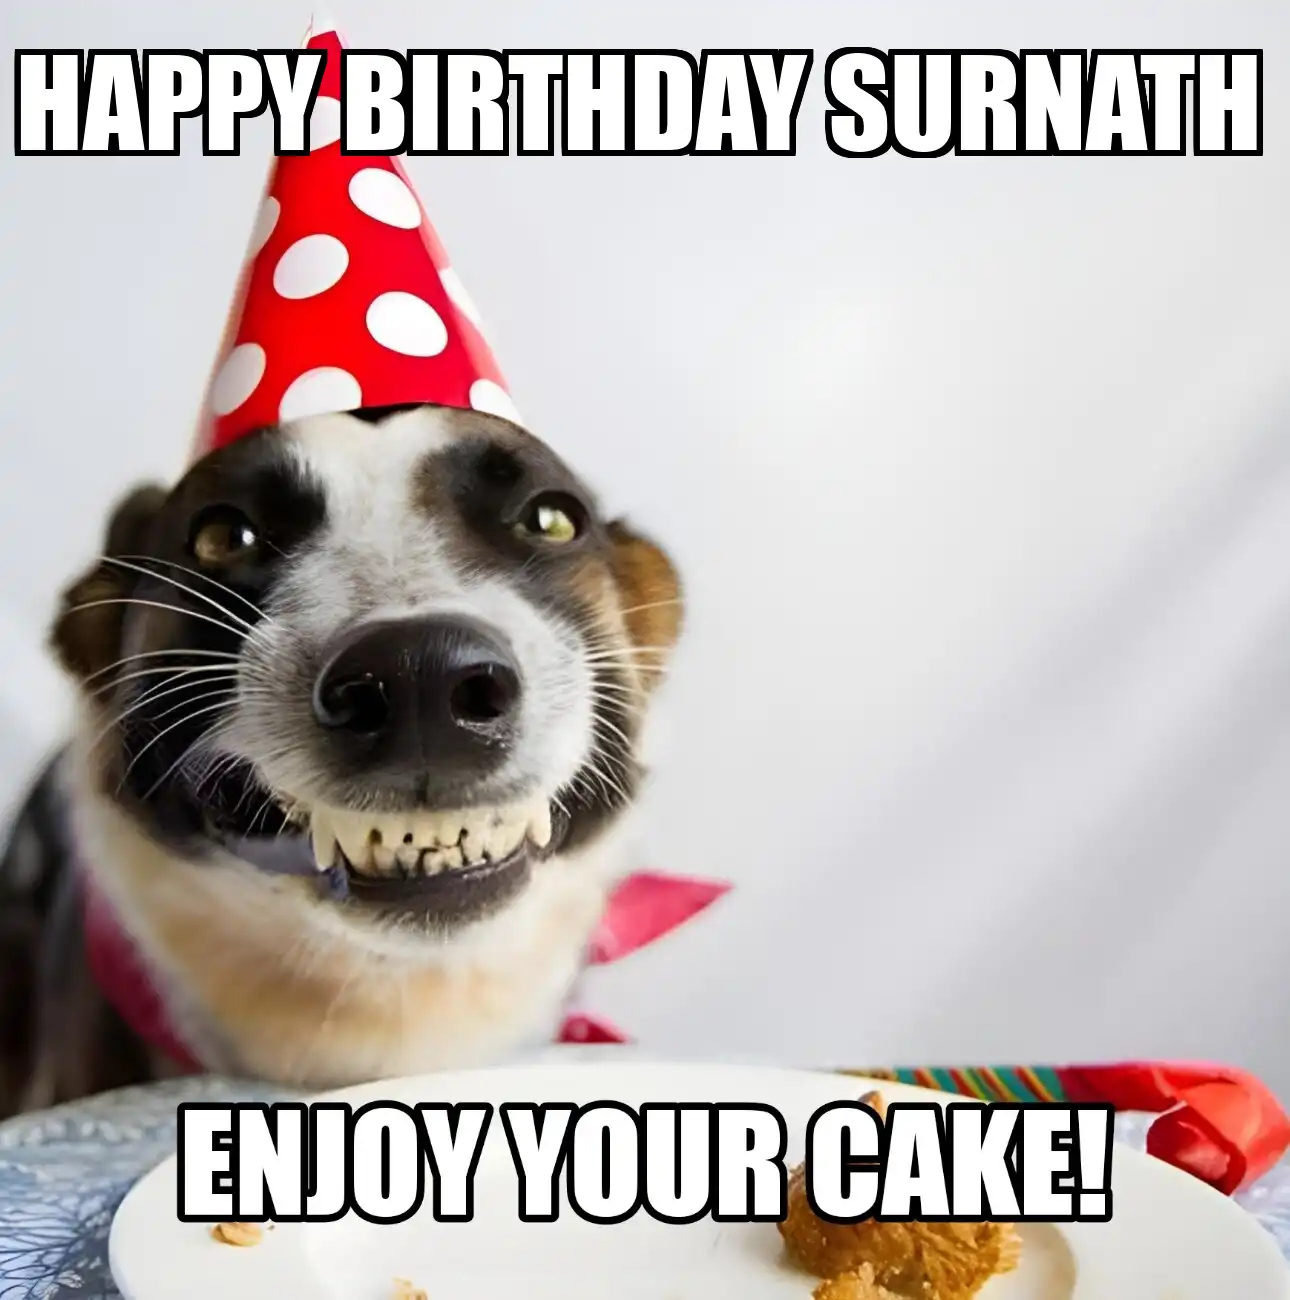 Happy Birthday Surnath Enjoy Your Cake Dog Meme